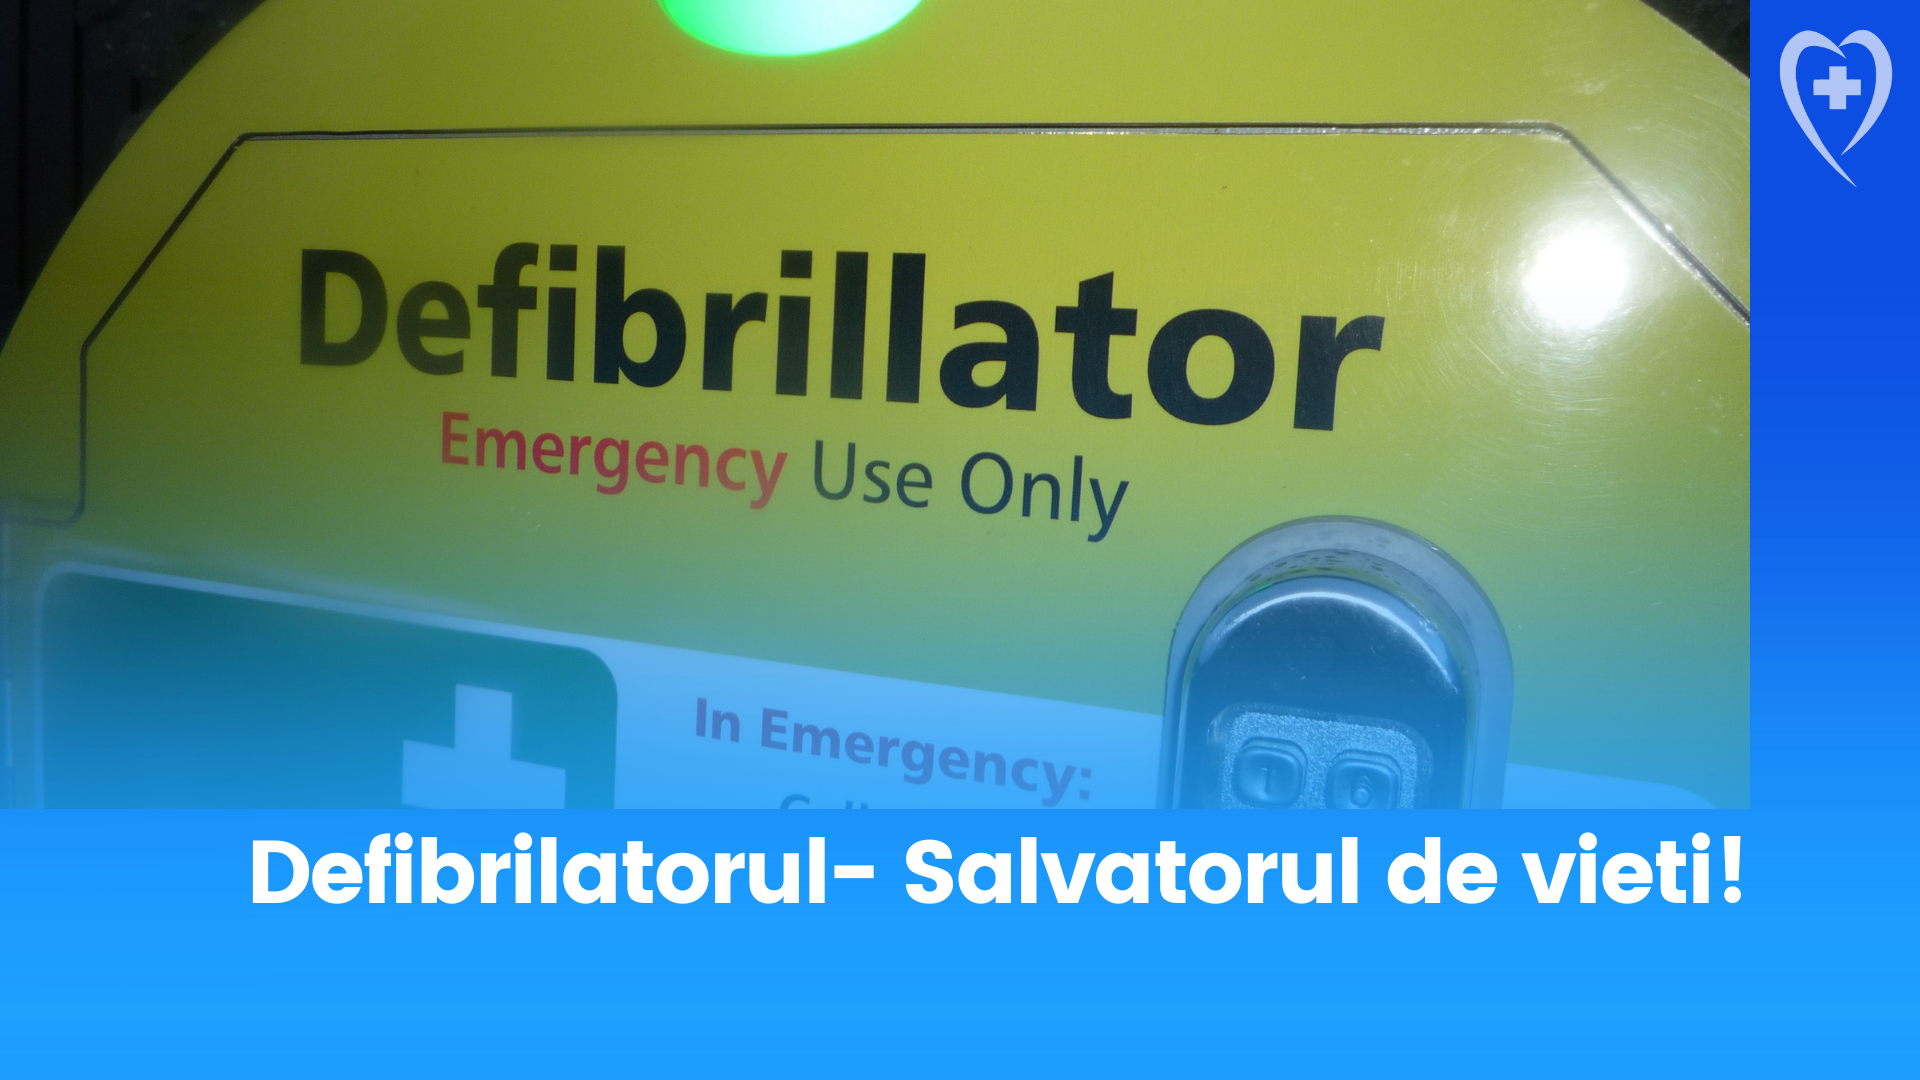 Defibrilatorul- Salvatorul de vieți